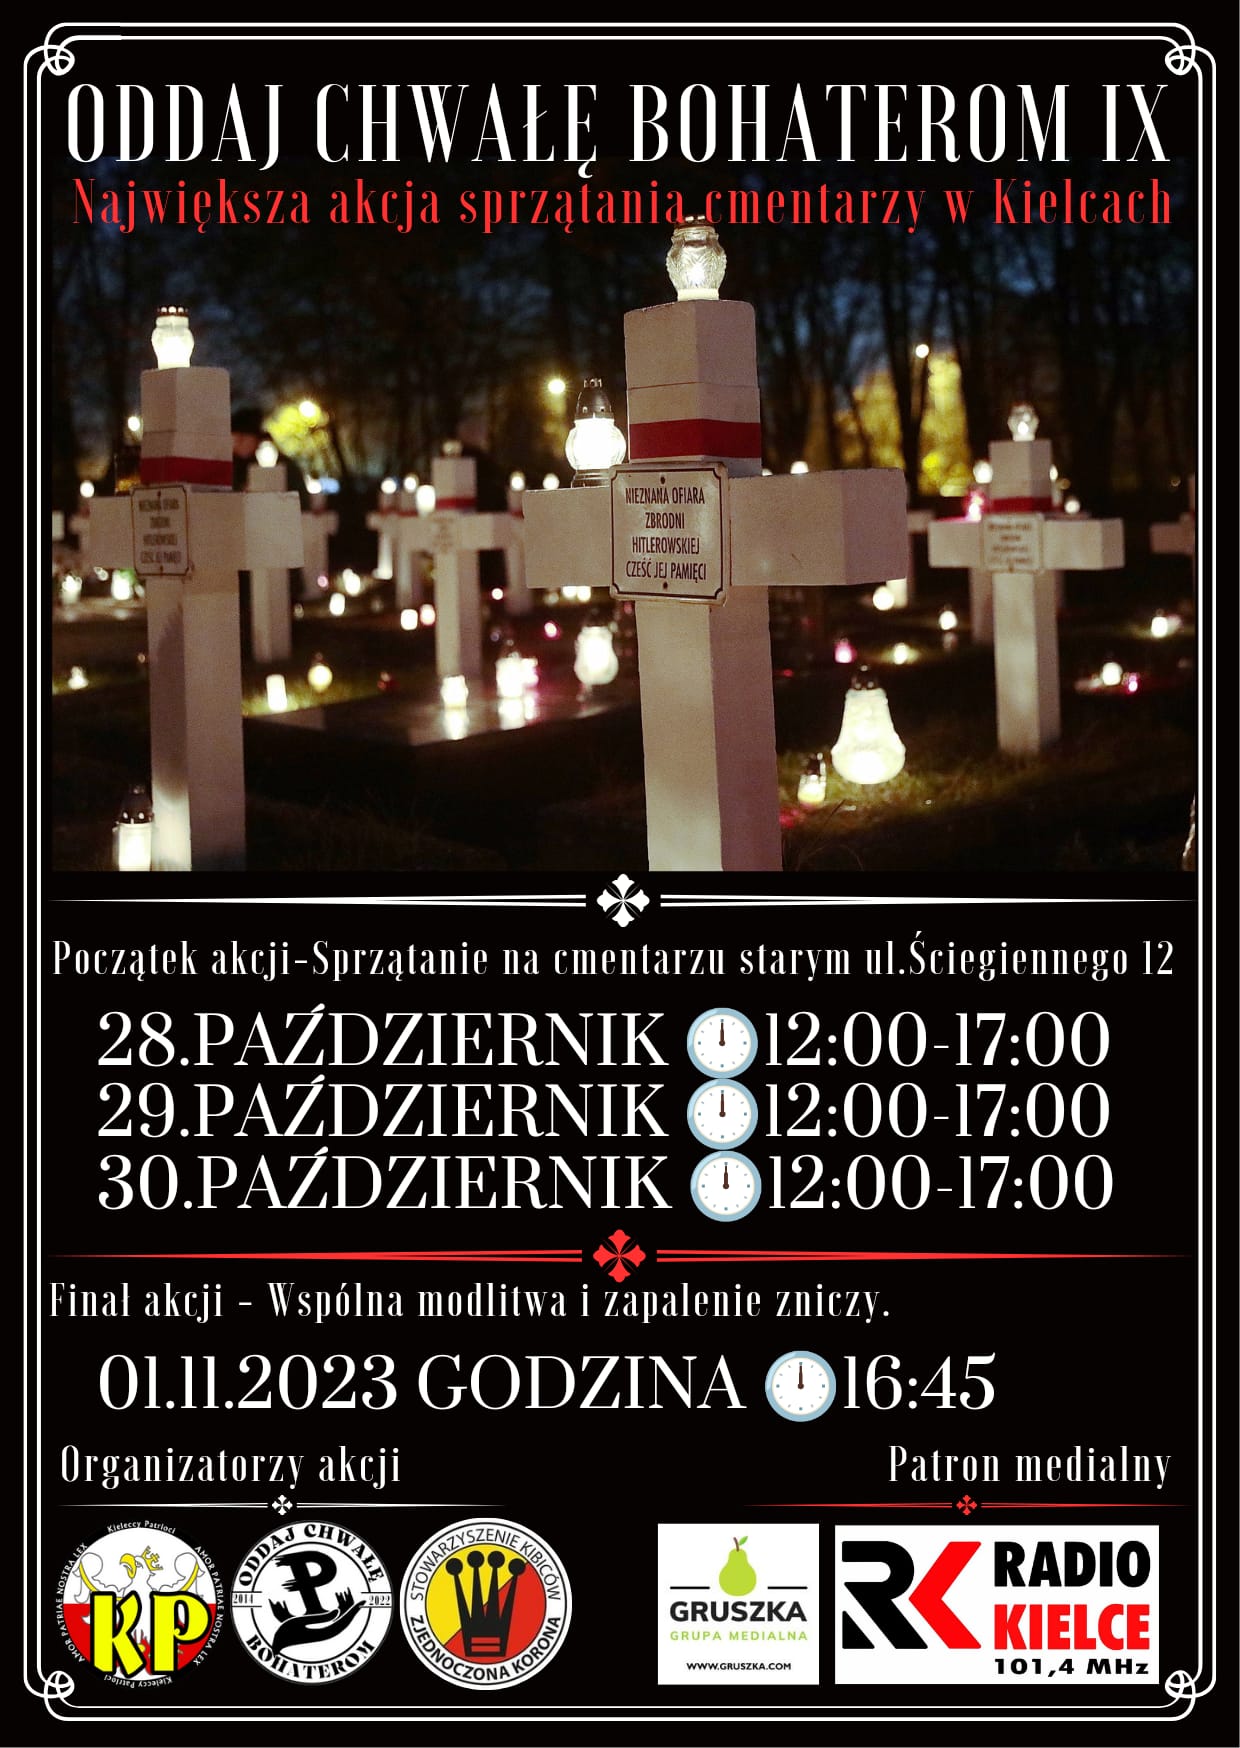 Oddaj Chwałę Bohaterom IX. Największa akcja sprzątania cmentarzy w Kielcach - Radio Kielce